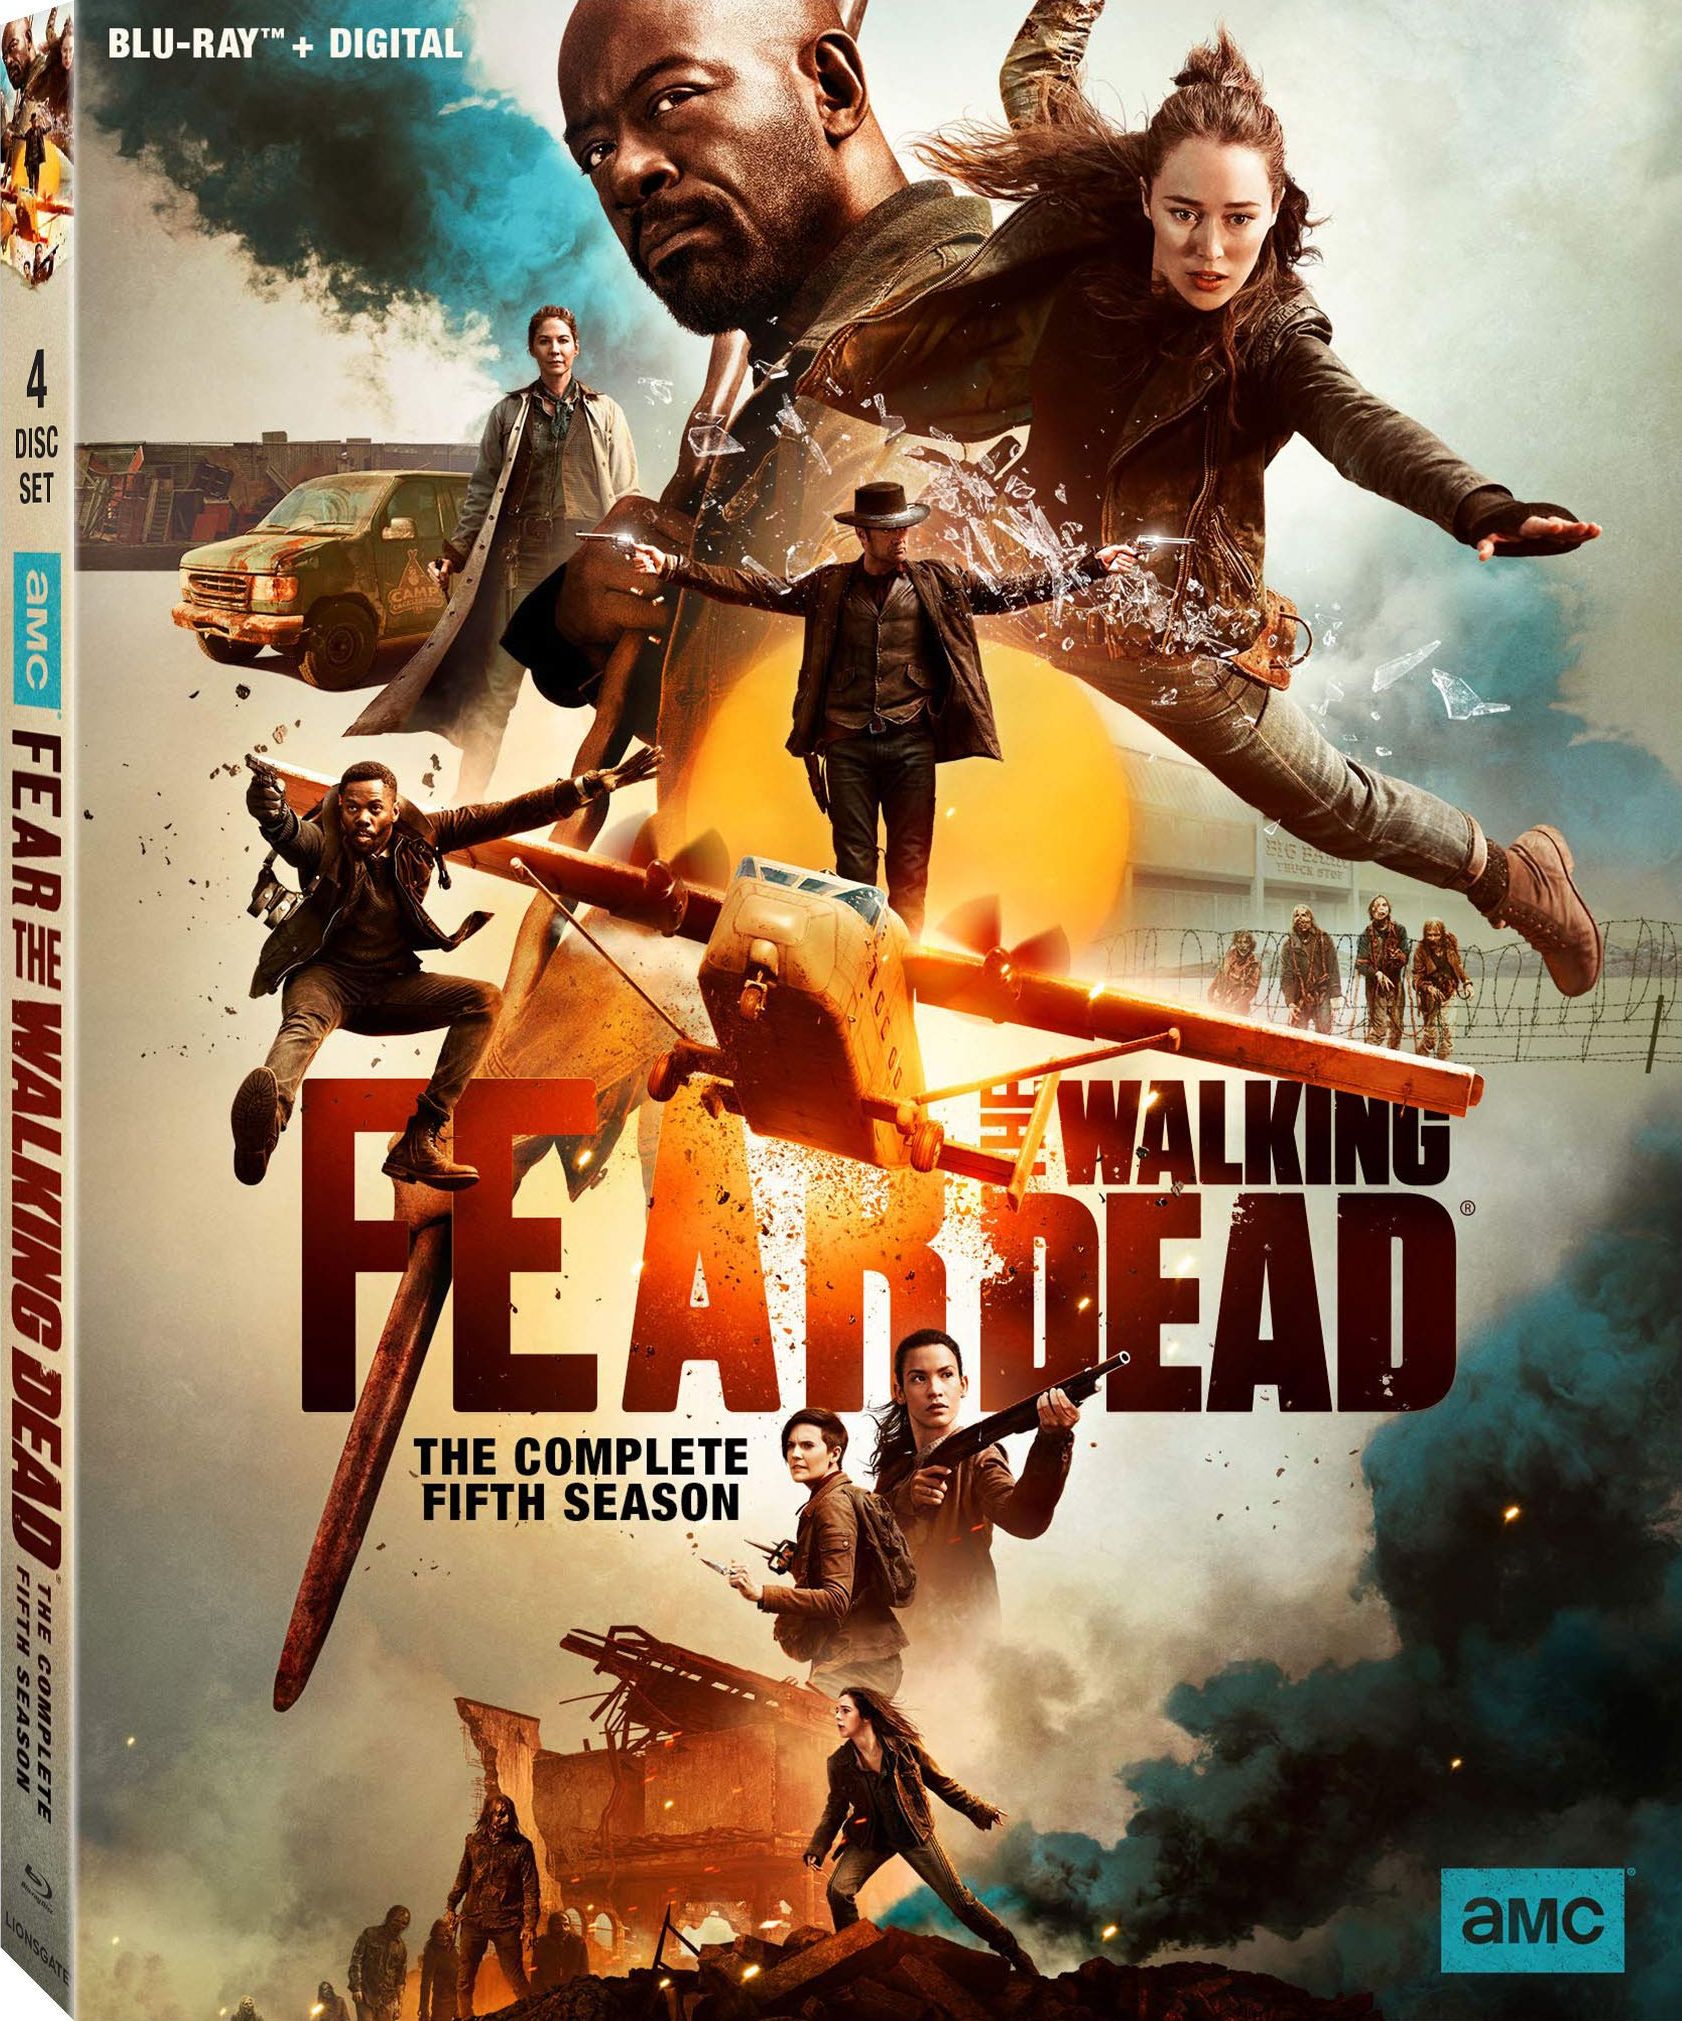 Fear the Walking Dead DVD Release Date